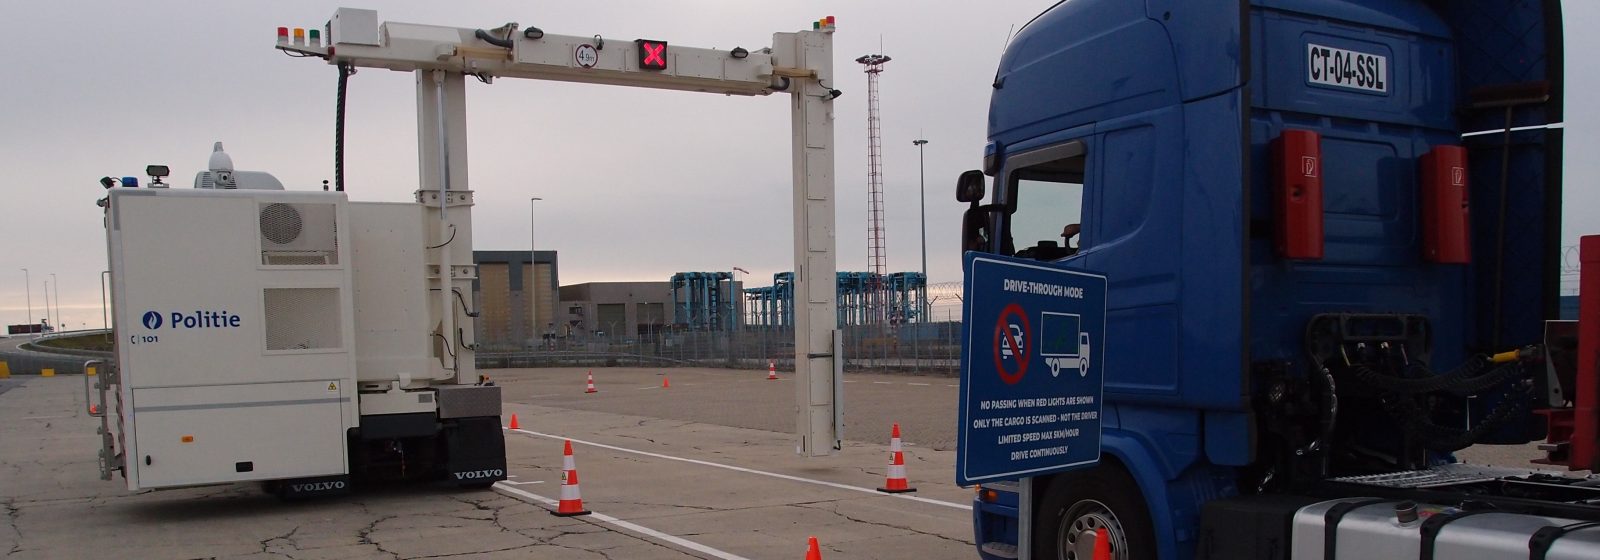 Mobiele scanner voor vrachtwagens en containers Scheepvaartpolitie Zeebrugge